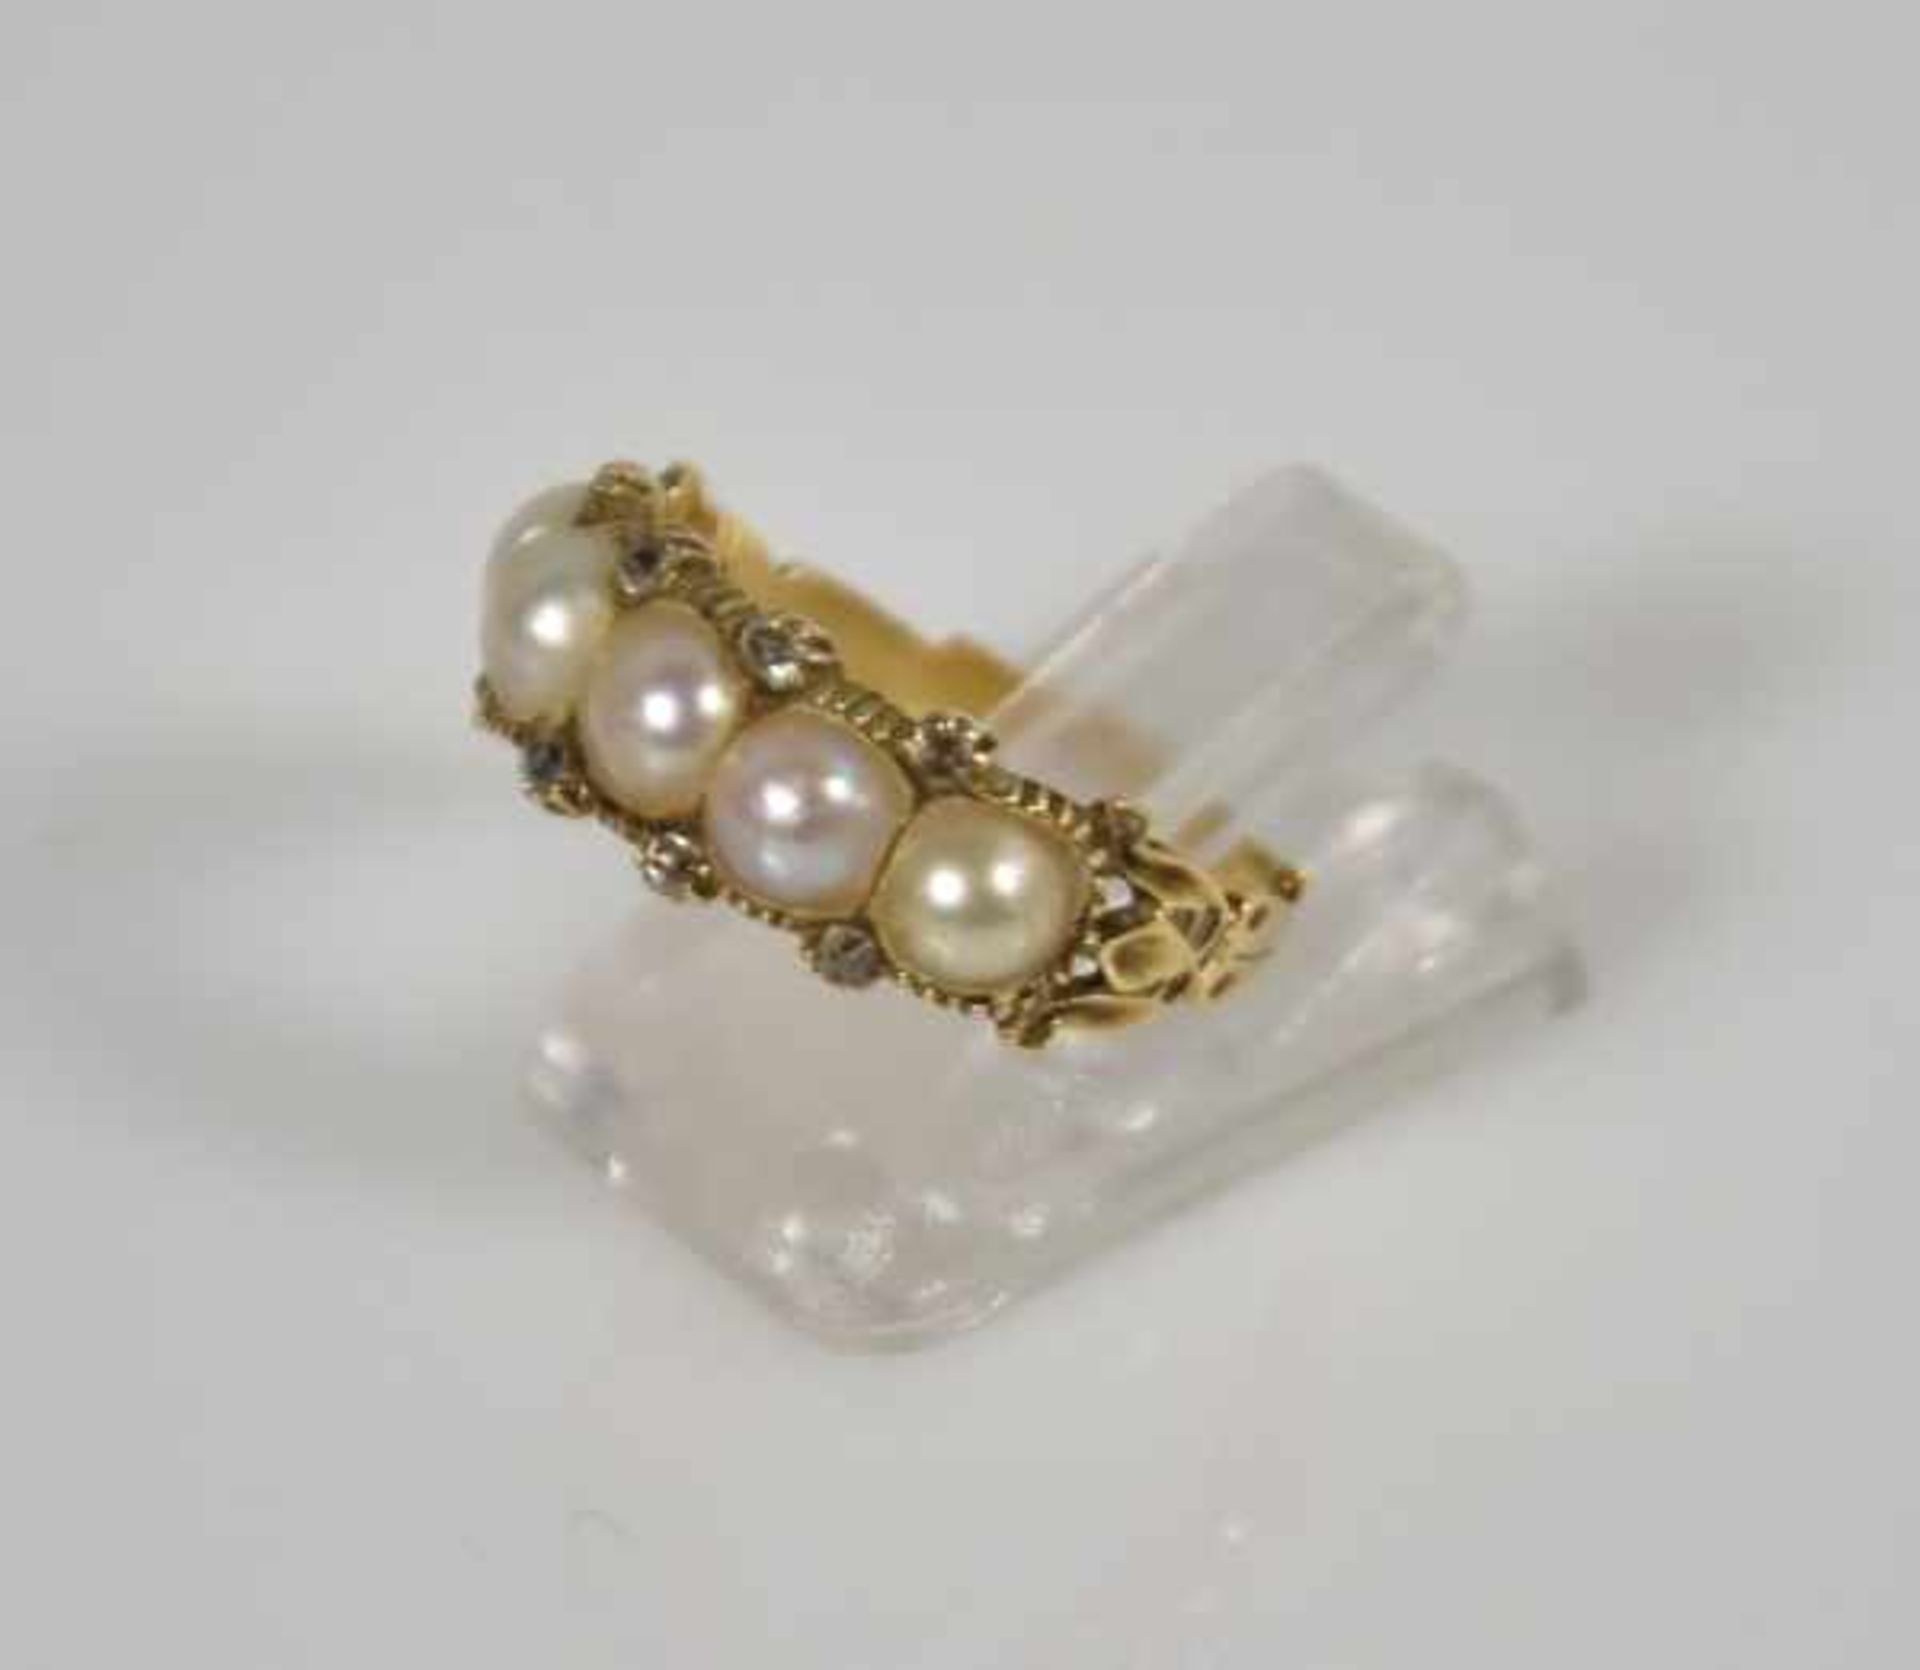 RING besetzt mit 5 weissen Perlen und kleinen Diamanten (1 fehlt), auf gebogter Goldfassung 14ct, - Bild 2 aus 3